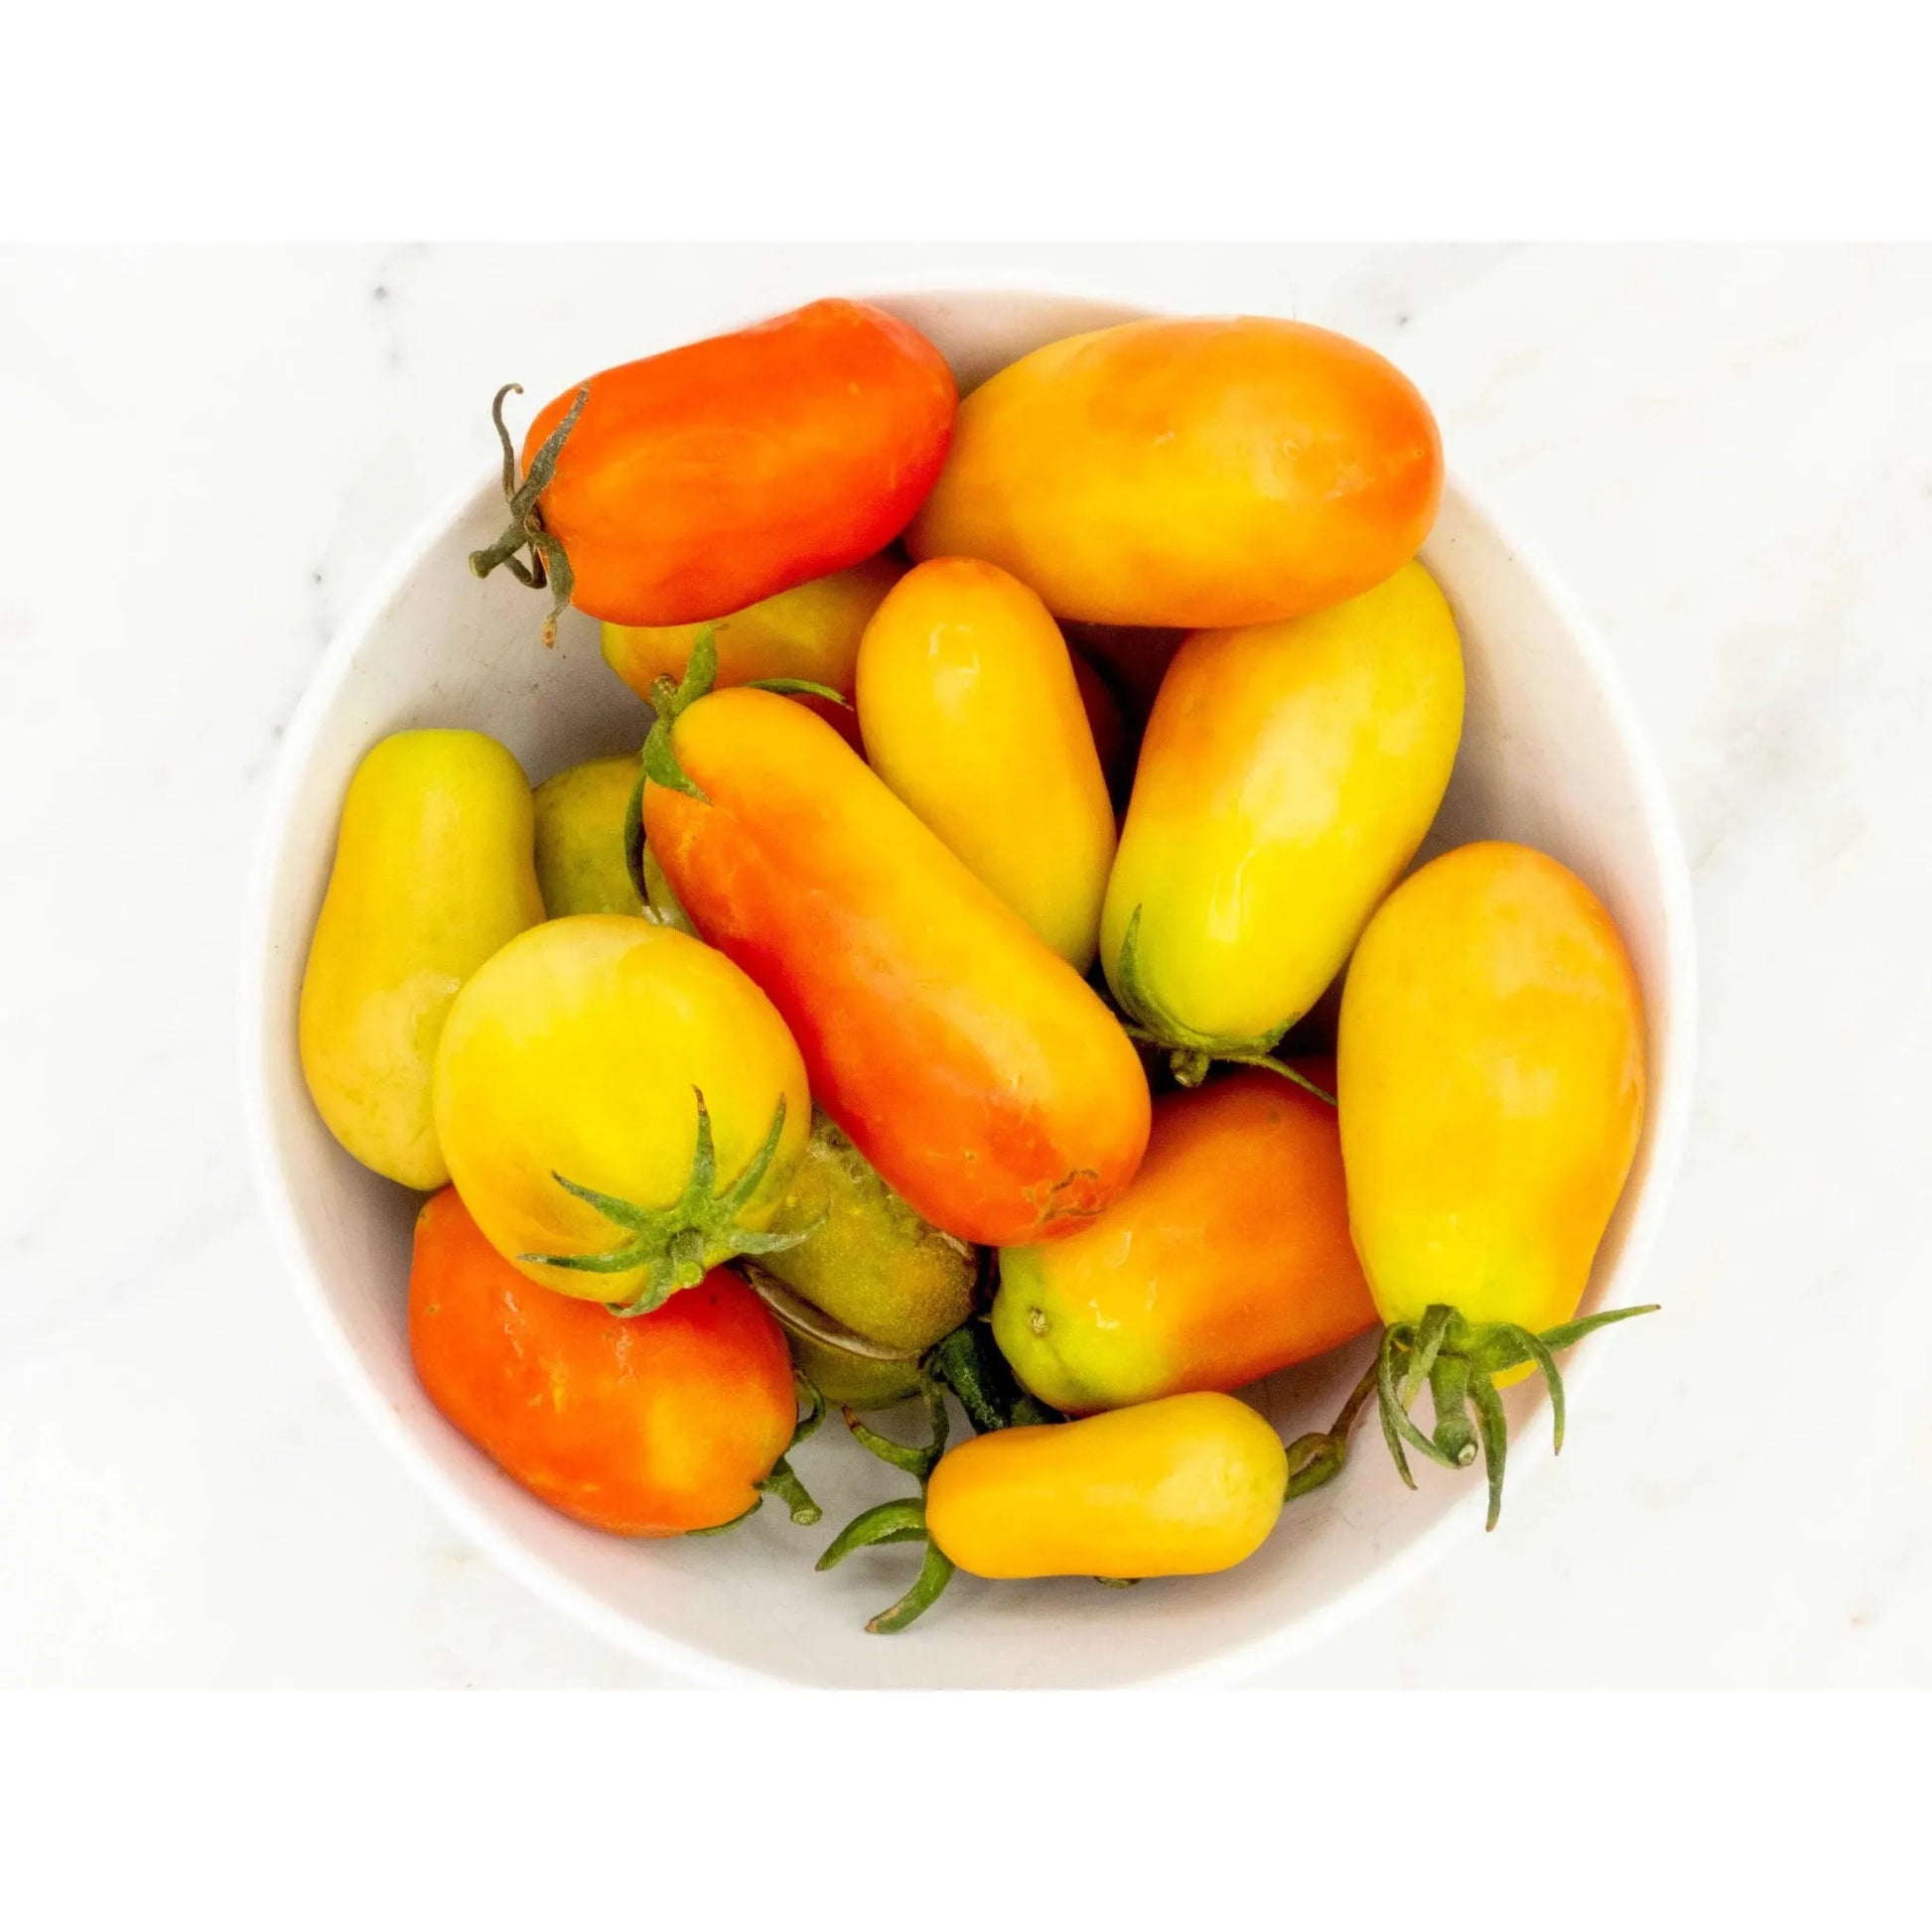 Soil - Grown Tomato Roma - Nutrient Farm